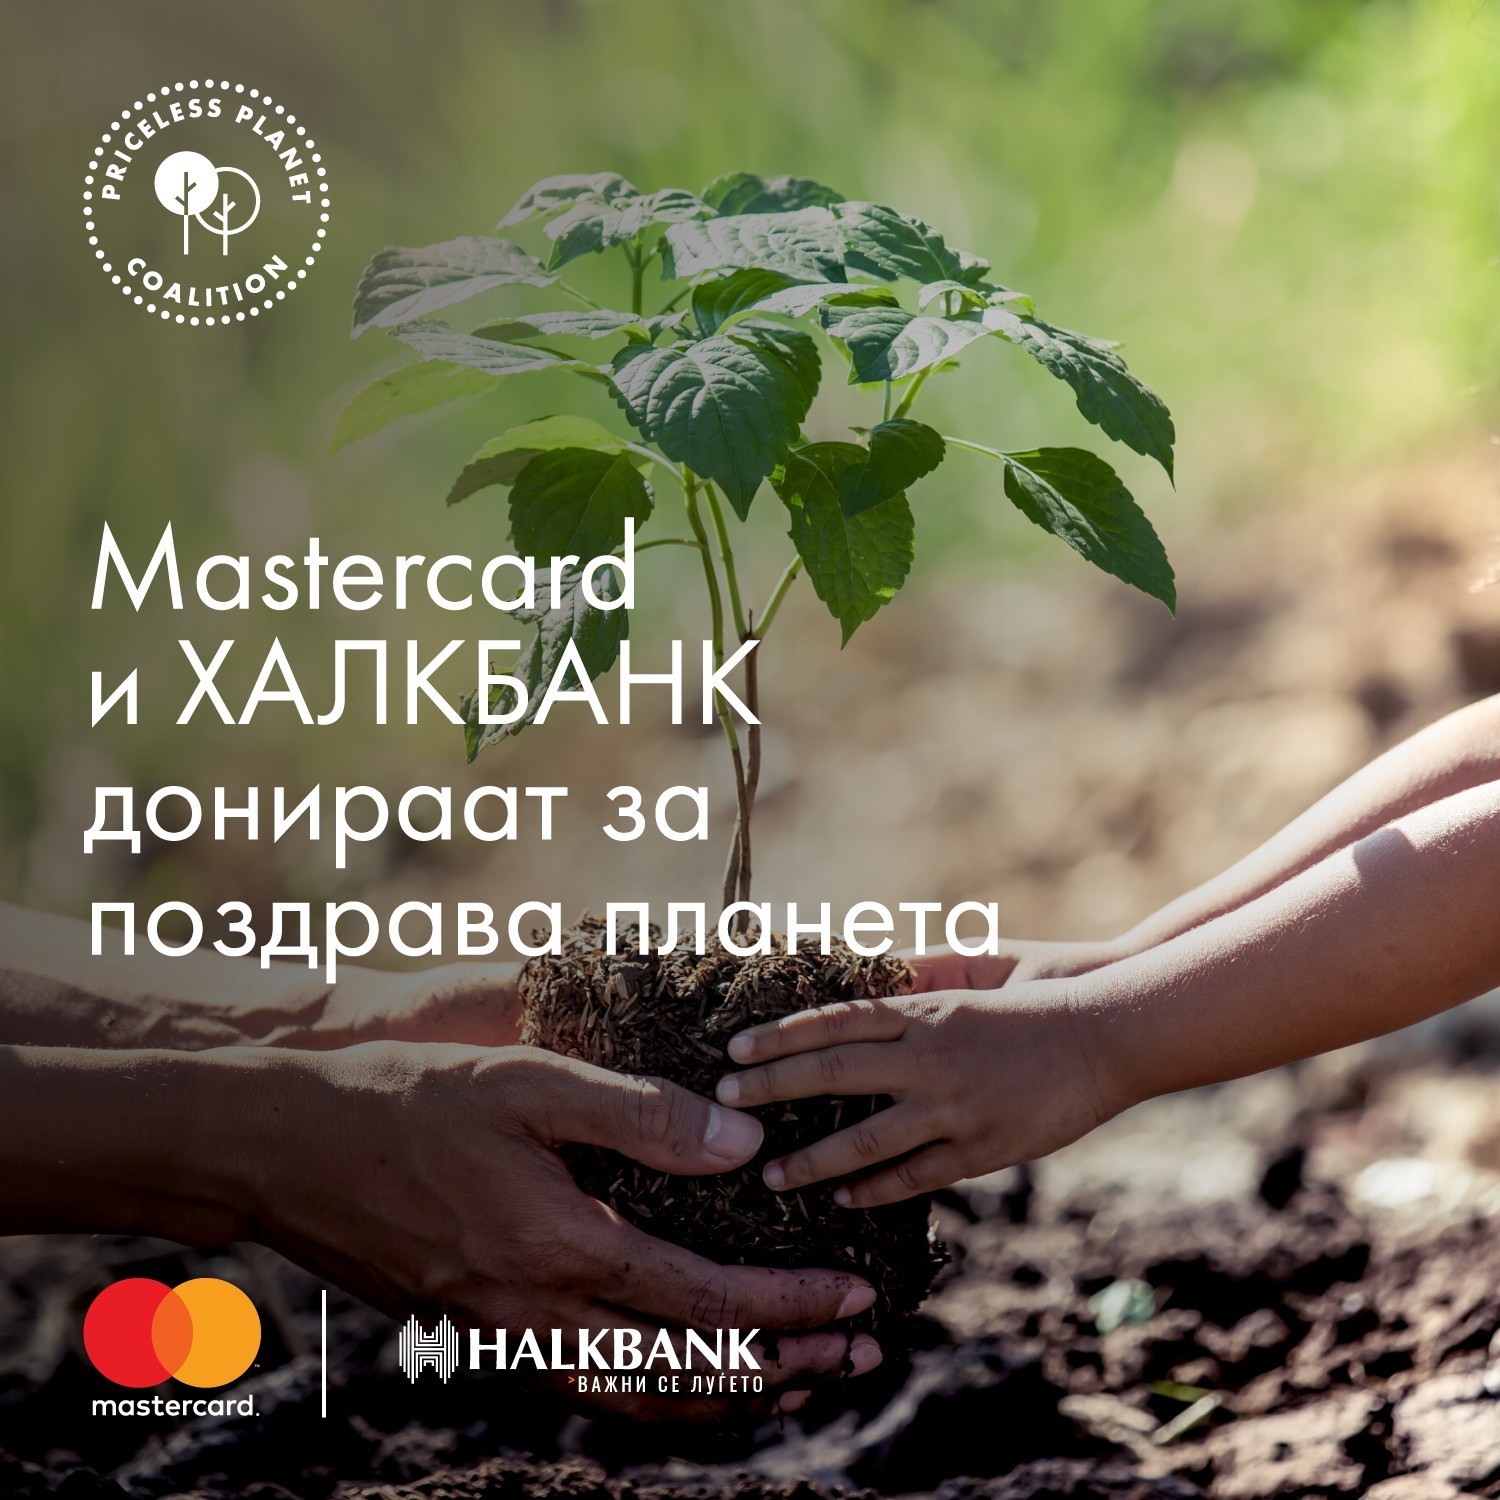 Халкбанк АД Скопје дел од поддржувачите на коалицијата „Priceless Planet“ - платфoрма на Mastercard насочена кон поздрава планета